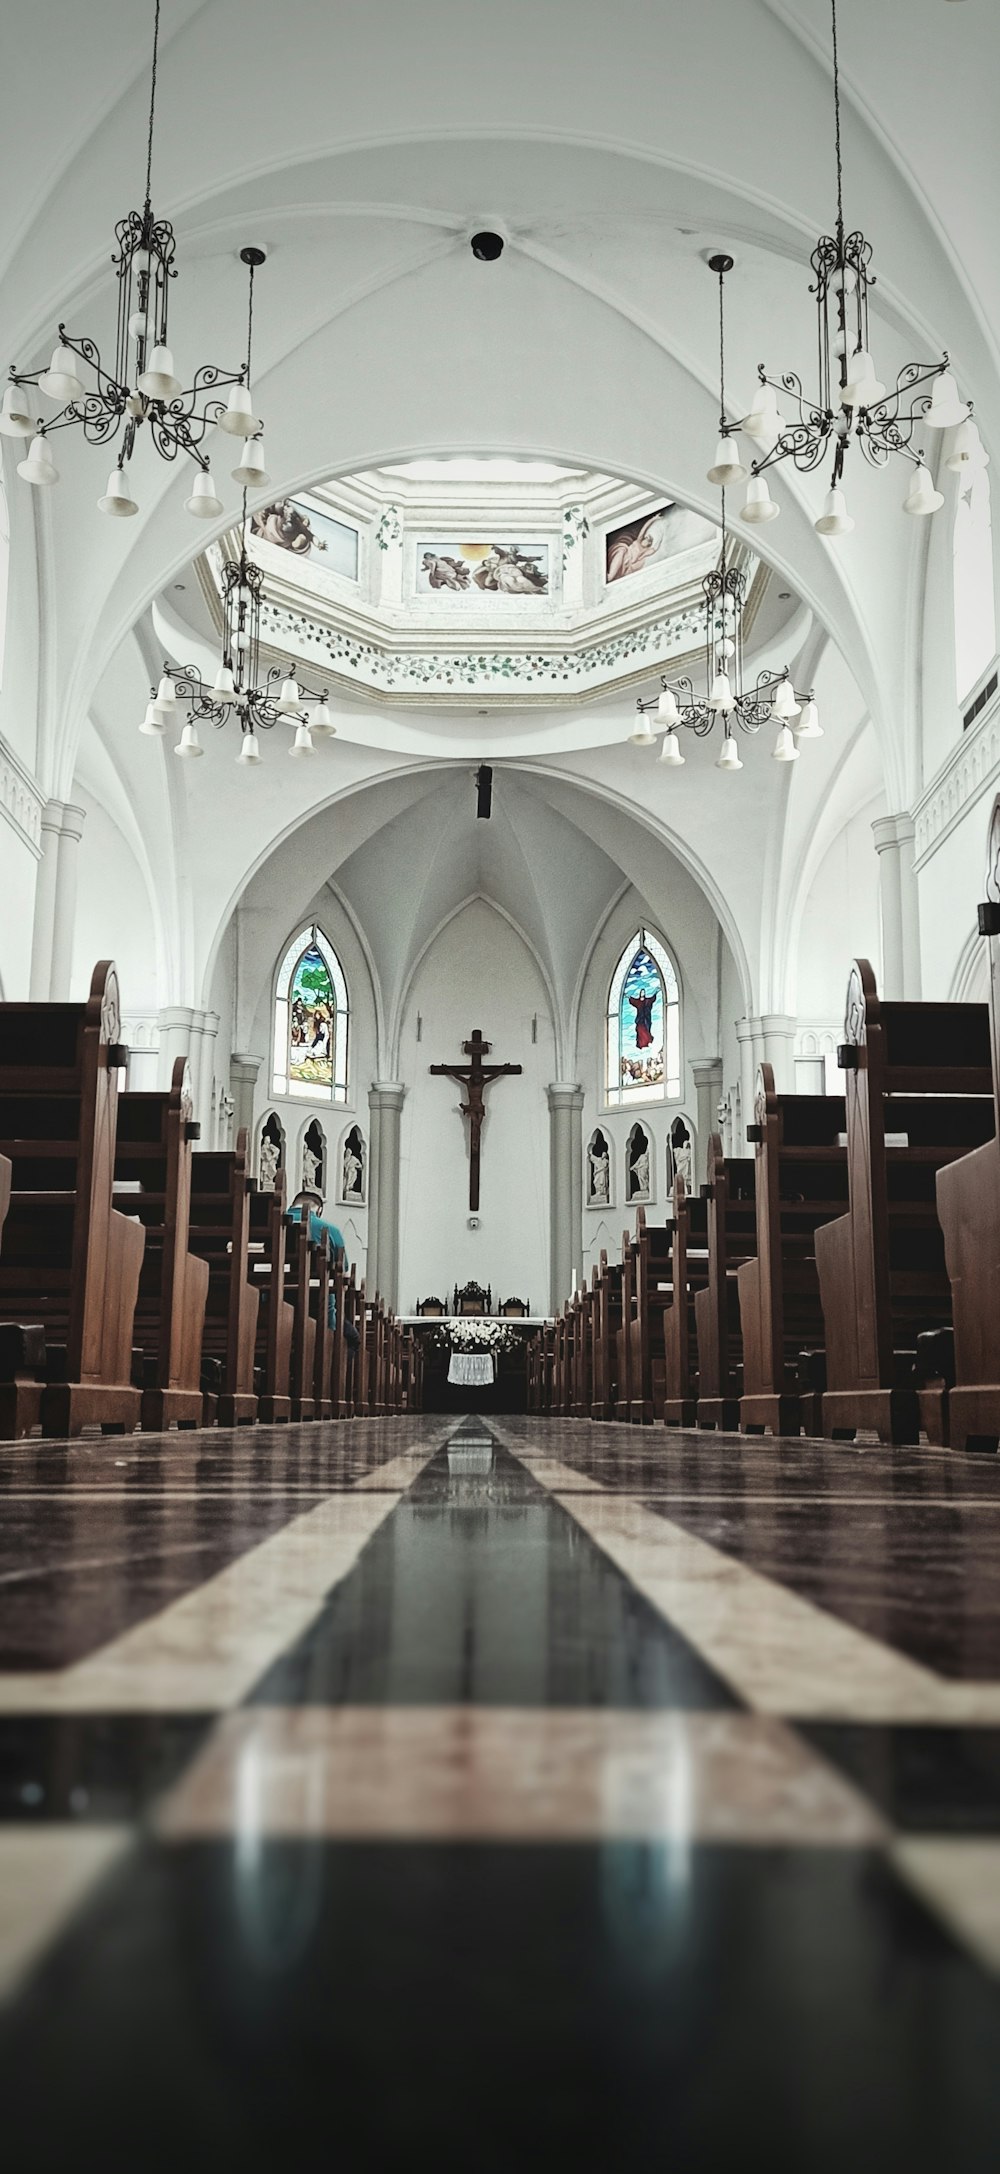 photographie architecturale de vue intérieure de l’église